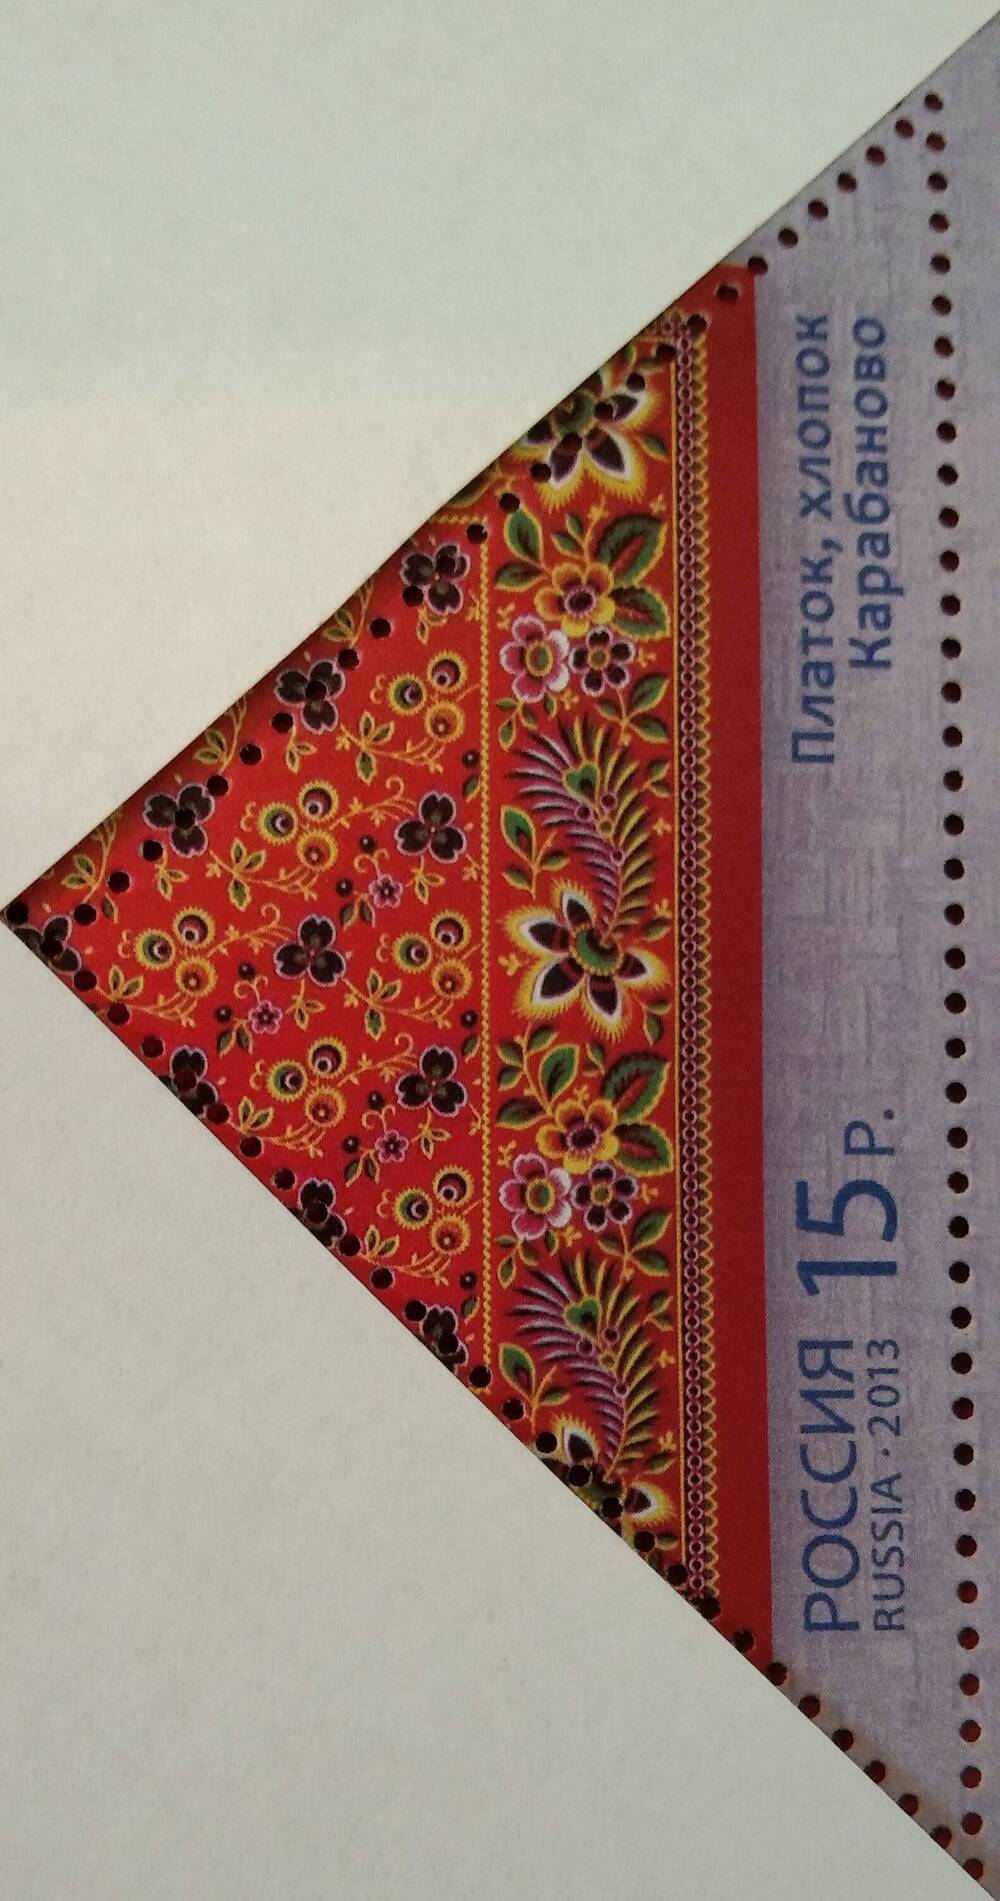 Марка почтовая, посвящённая декоративно-прикладному искусству России -платкам